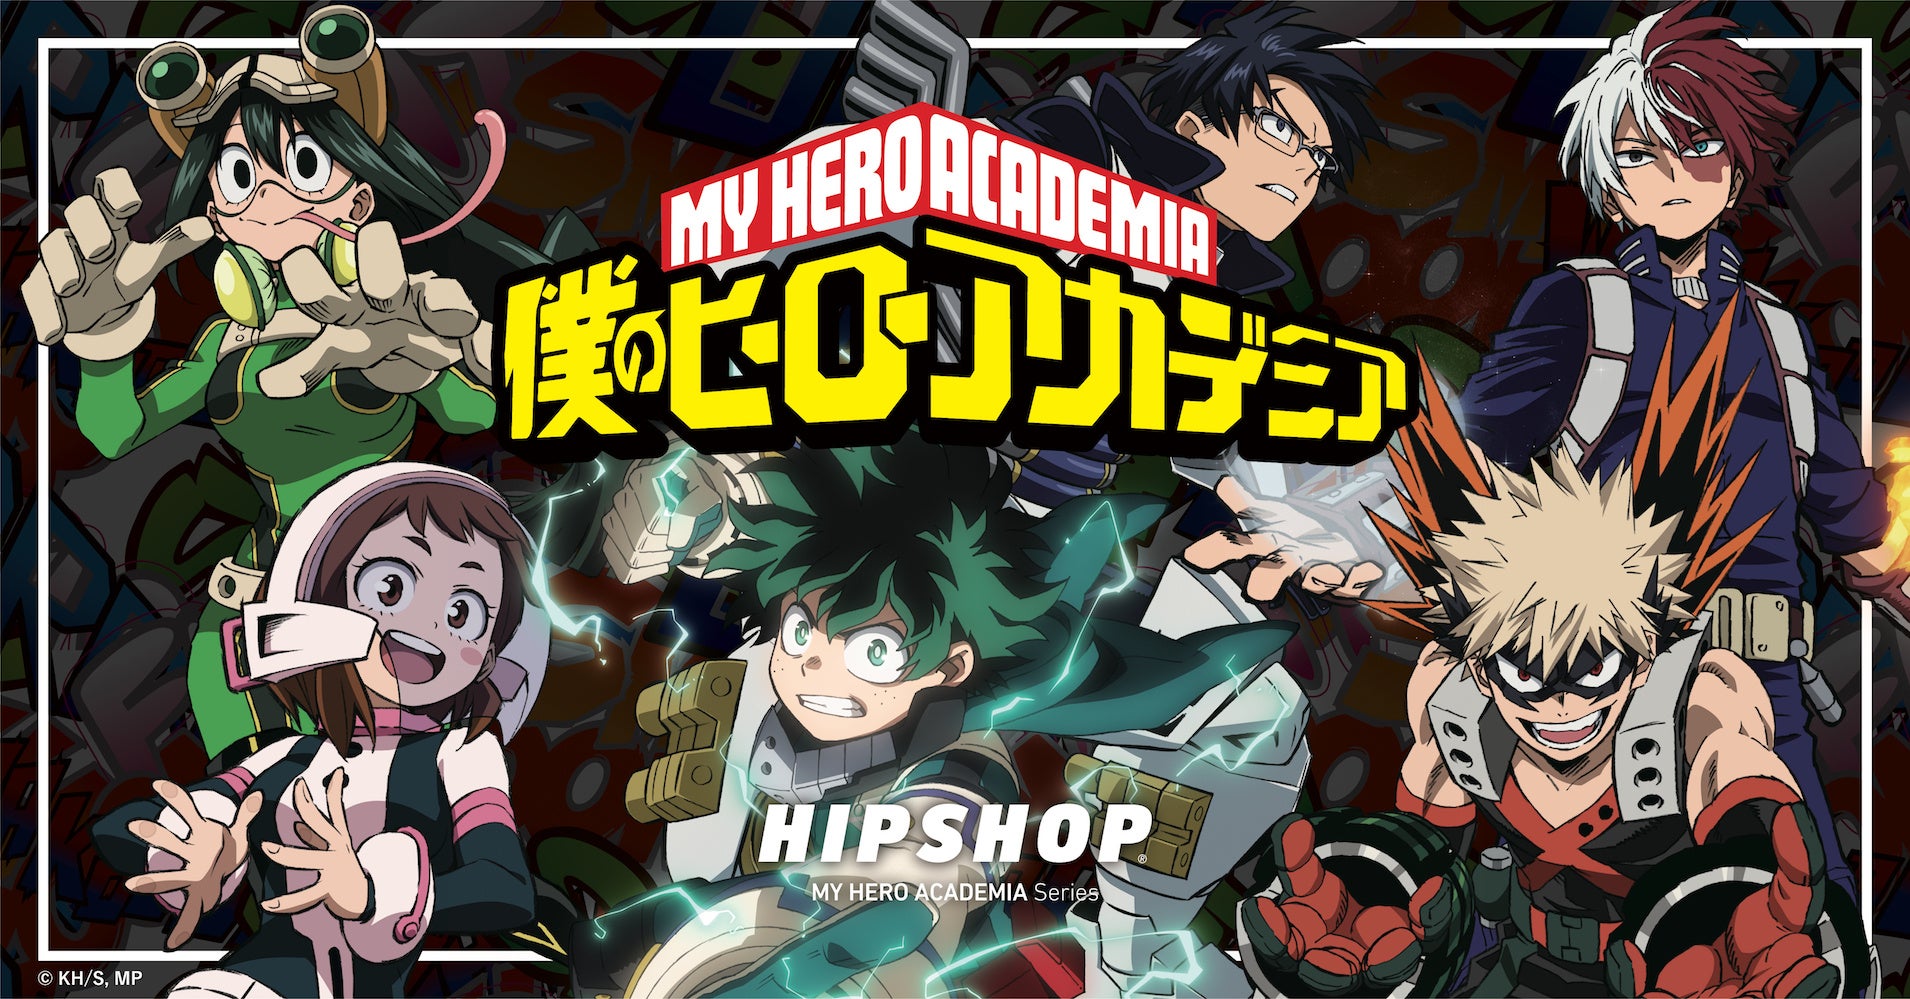 PLUS ULTRA！【HIPSHOP(ヒップショップ)】が、TVアニメ『僕のヒーローアカデミア』とコラボレーション！11月4日(金) に先行予約開始！「プレミアムバンダイ」でも発売決定！